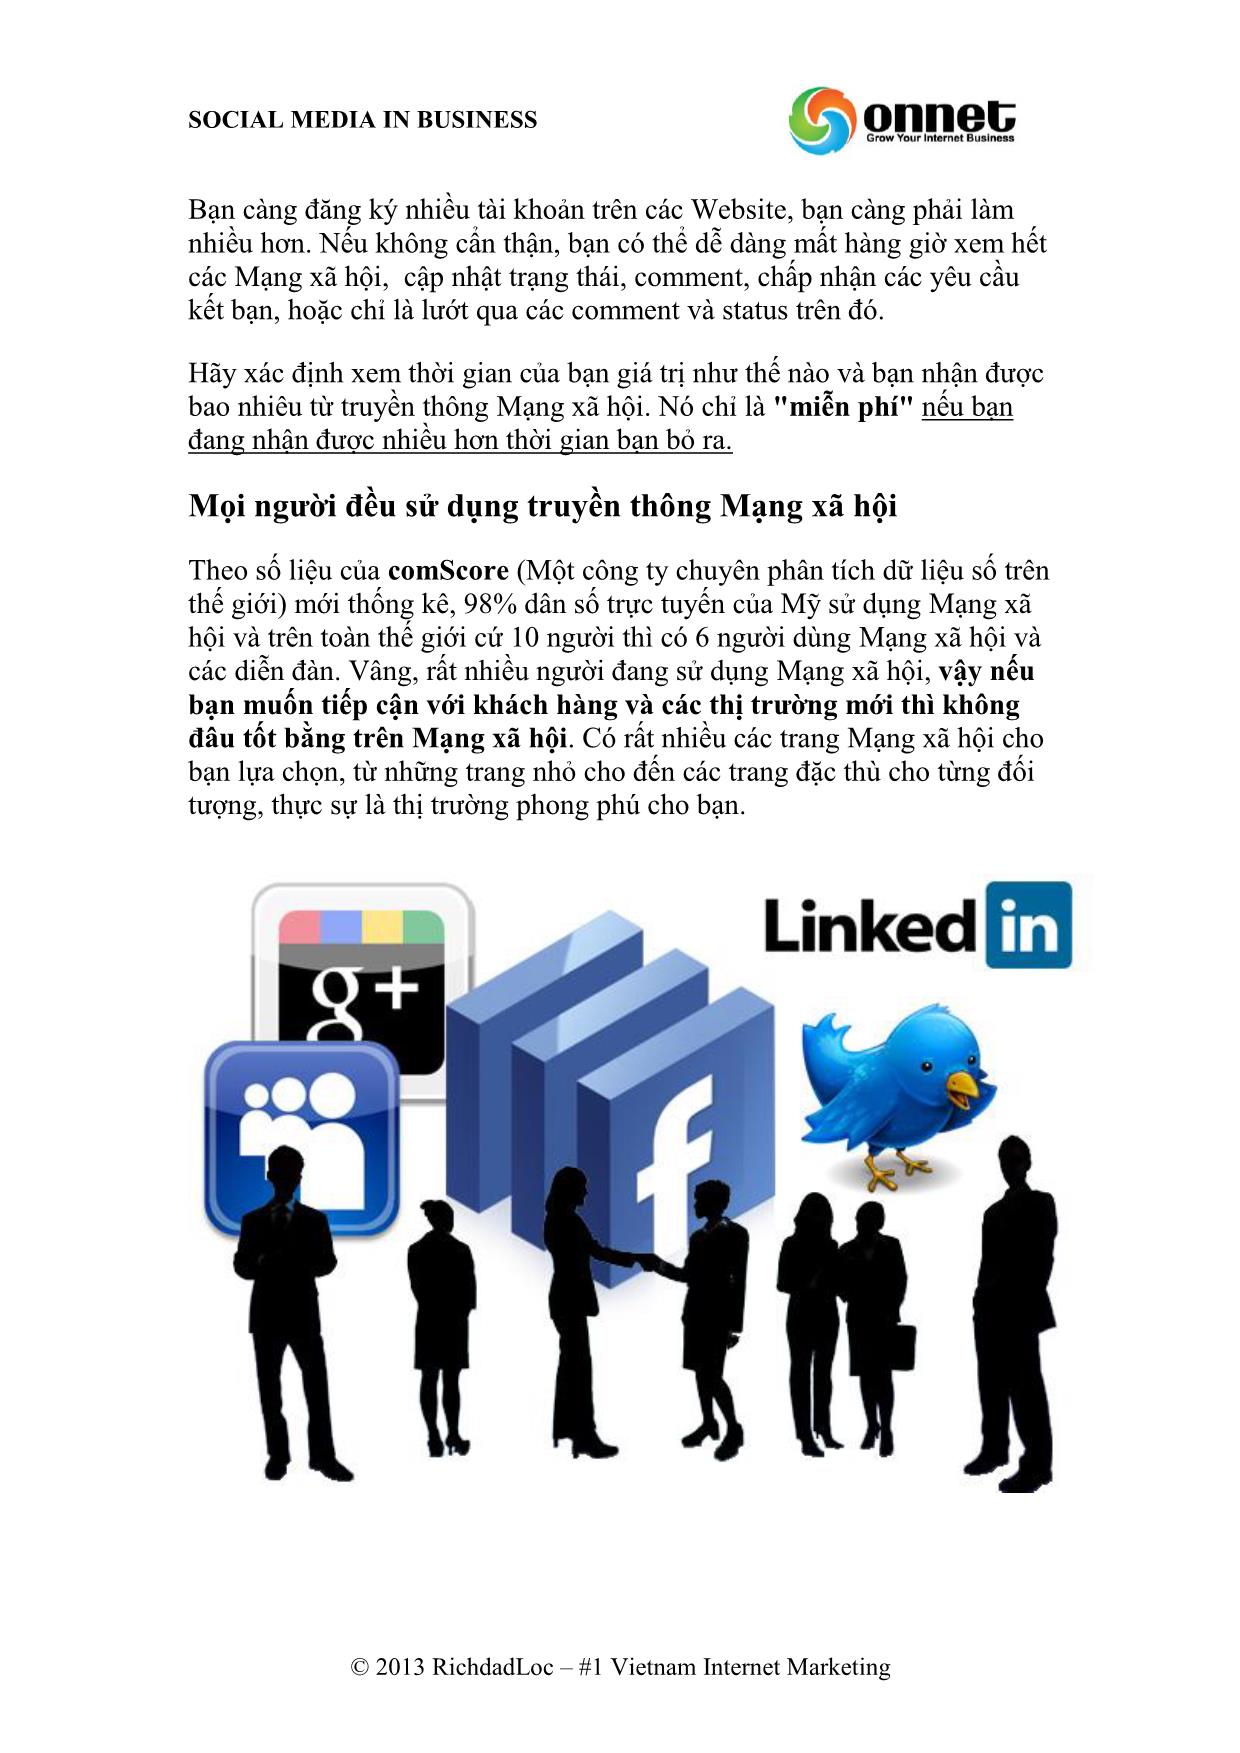 Truyền thông mạng xã hội trong kinh doanh - Hiện thực hóa với doanh nghiệp của bạn trang 5